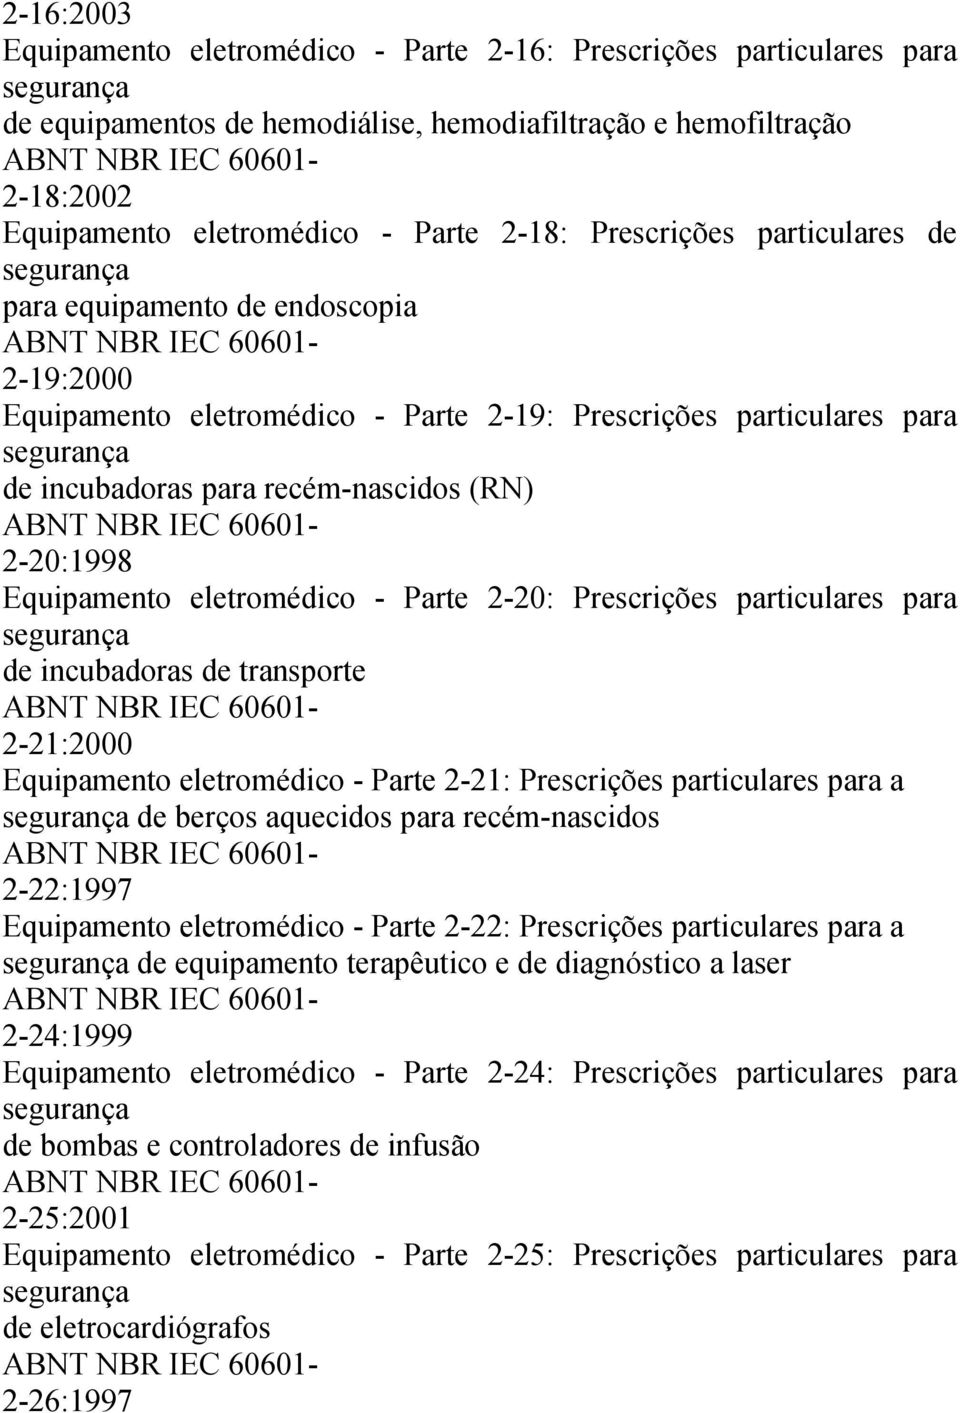 eletromédico - Parte 2-20: Prescrições particulares para de incubadoras de transporte 2-21:2000 Equipamento eletromédico - Parte 2-21: Prescrições particulares para a de berços aquecidos para